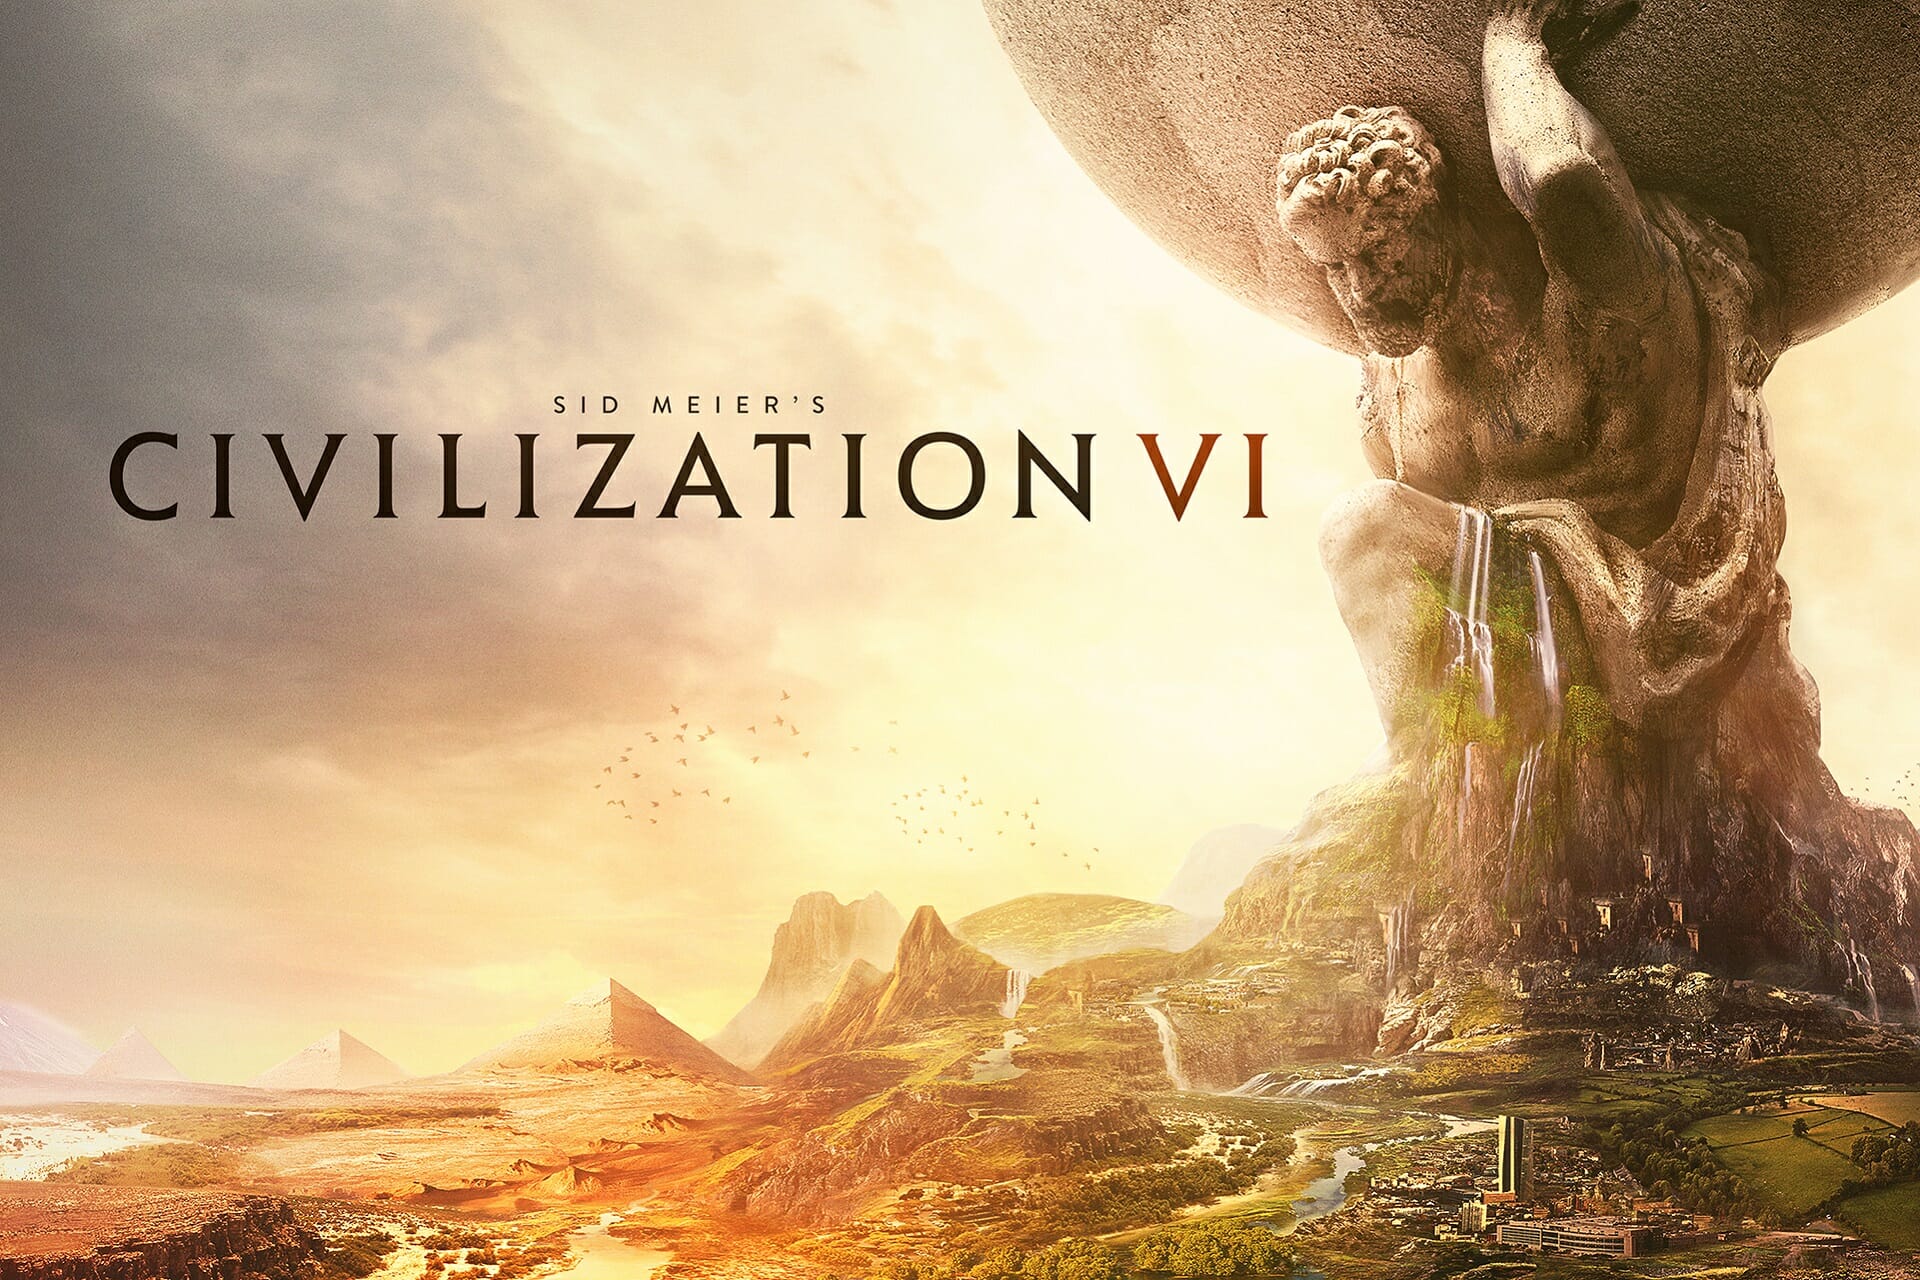 Civilization VI won’t start on Steam